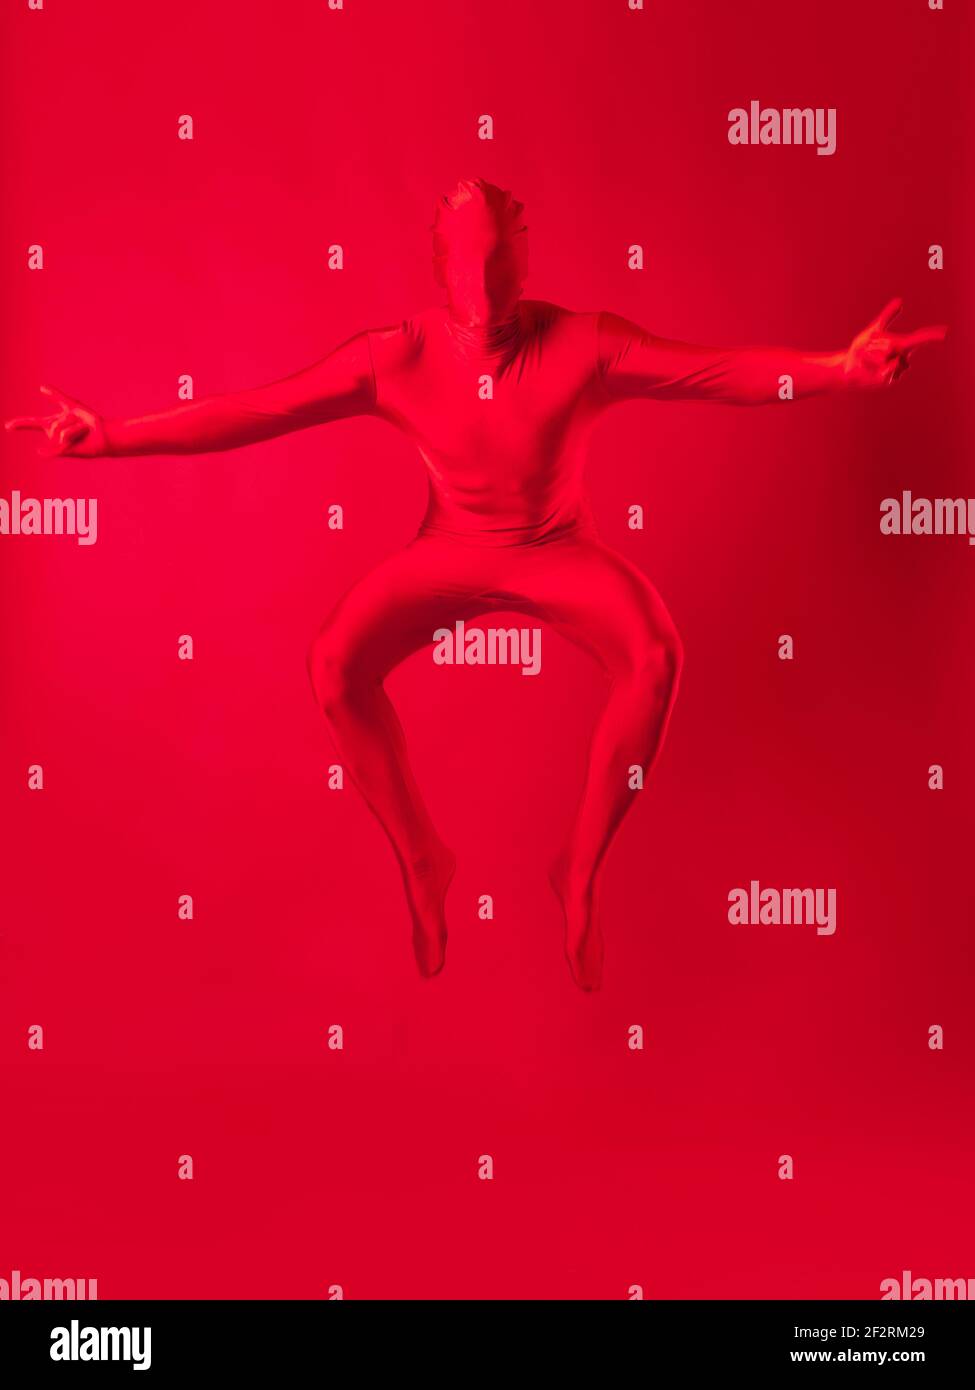 Verrückter roter Mann auf rotem Hintergrund. Figur in einem Trikot, das den ganzen Körper bedeckt und Gesicht springt auf. Stockfoto